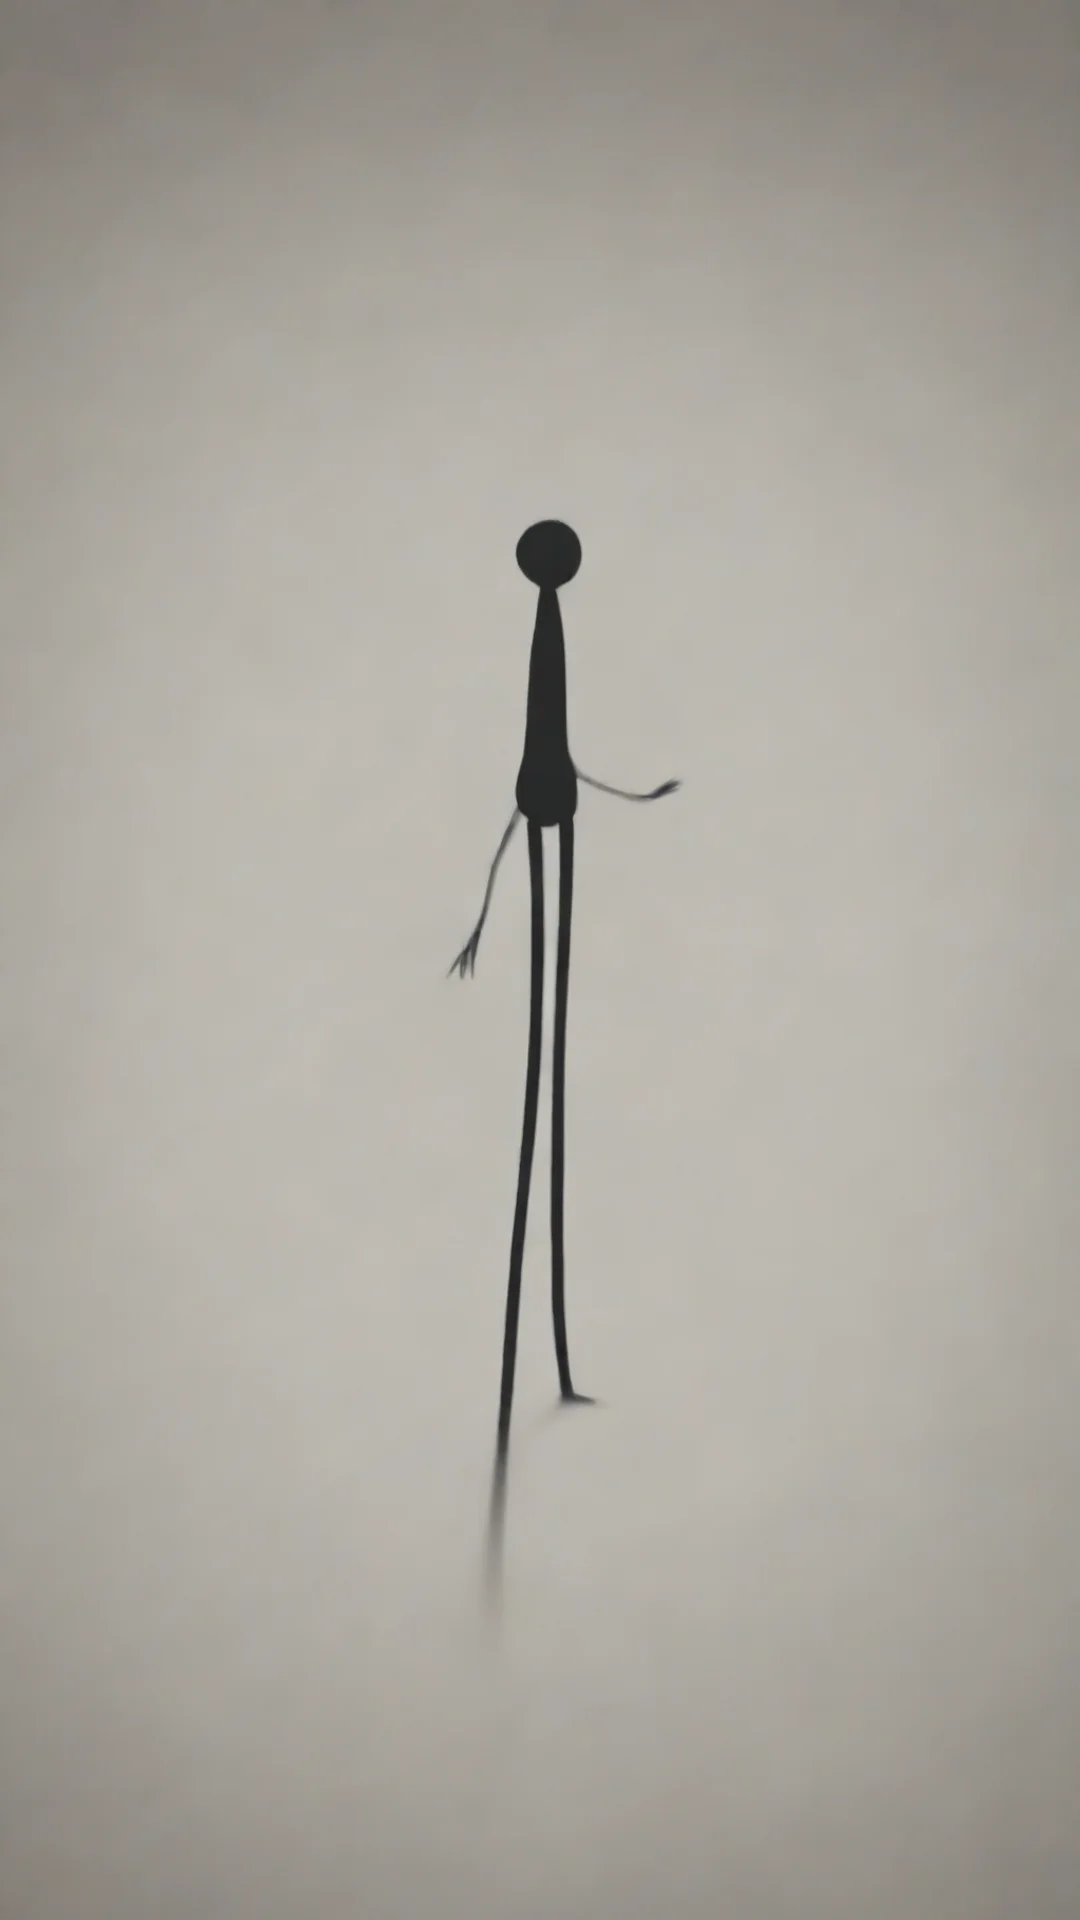 stickman walking tall